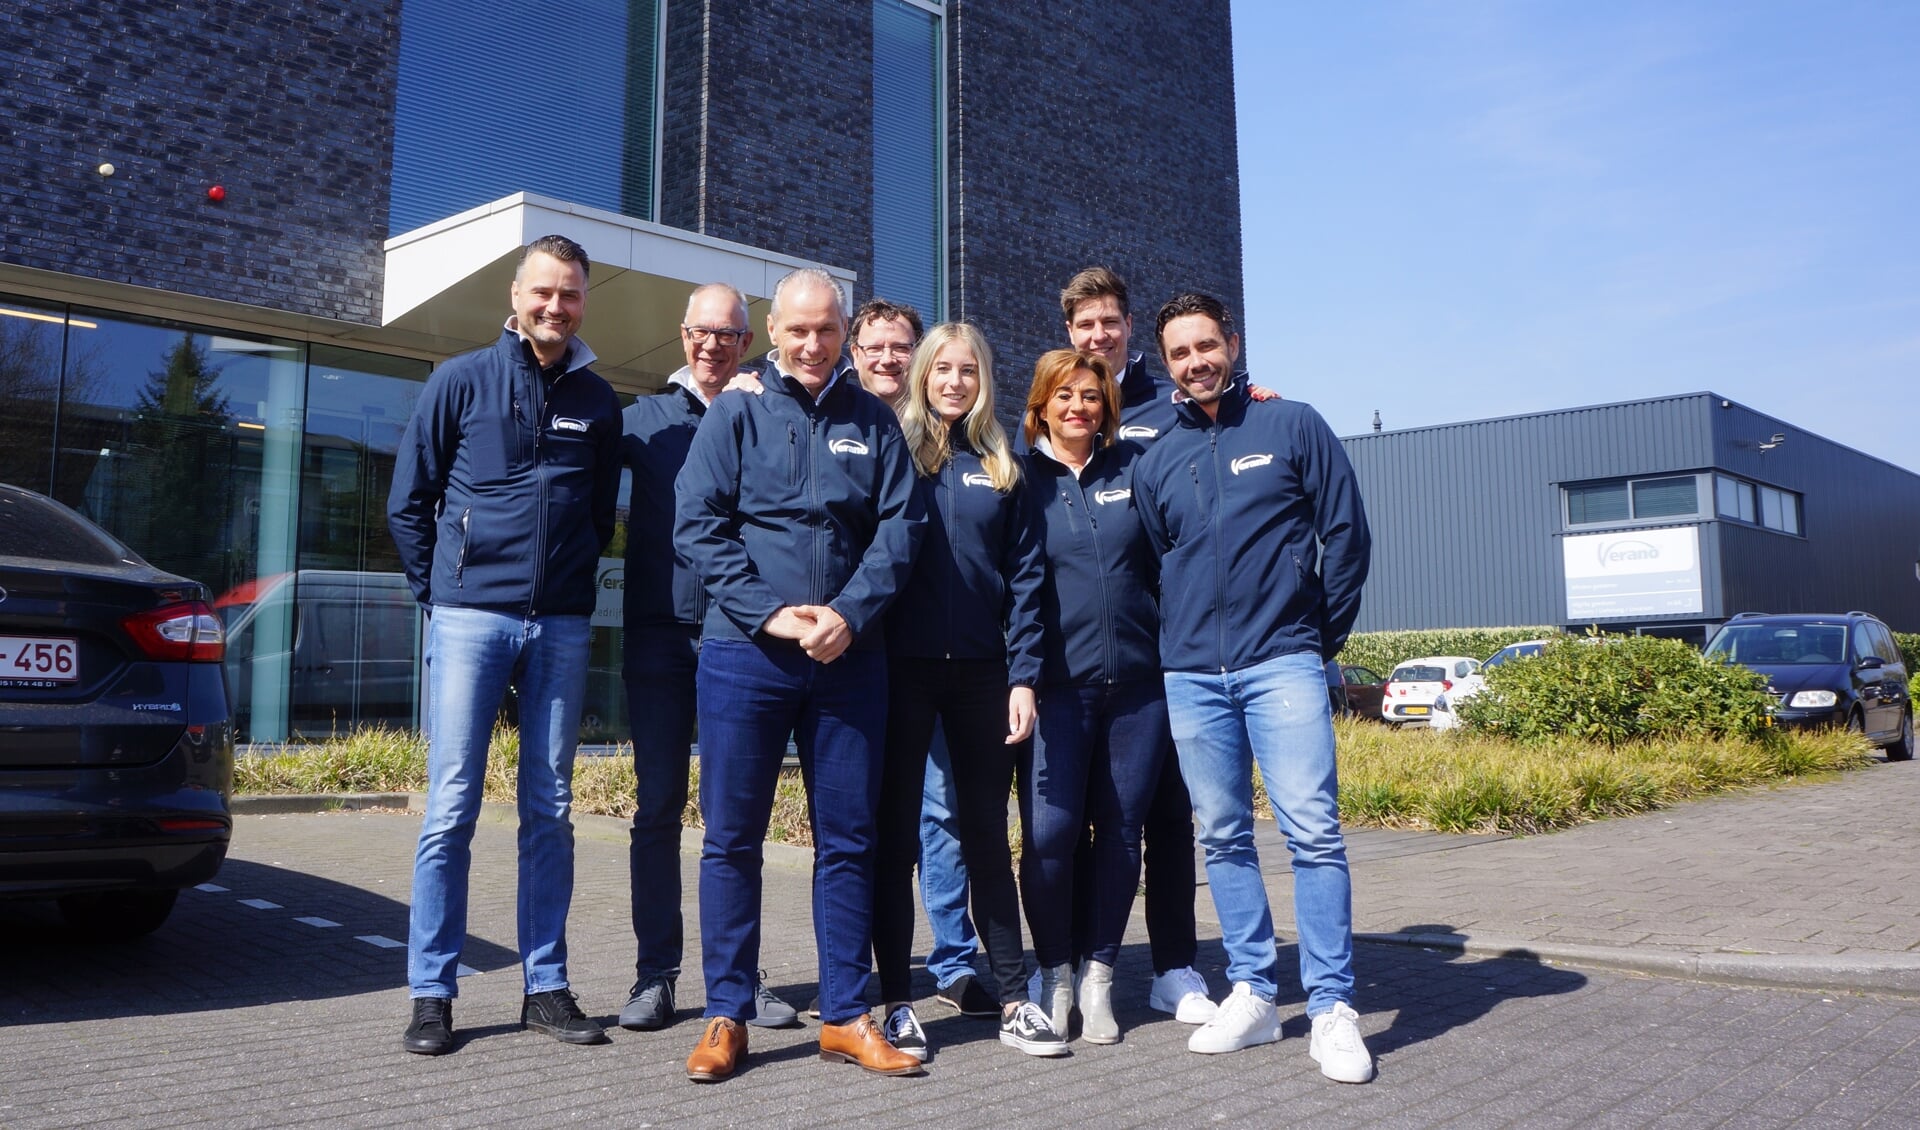 Team Verano: v.l.n.r.: Patrick Gofers, Erik Kroon, Marco van Heeswijk, Erwin Kuis, Linda Simons, Jacqueline Toebes, Christiaan van den Broek, Harrie van Zutphen.